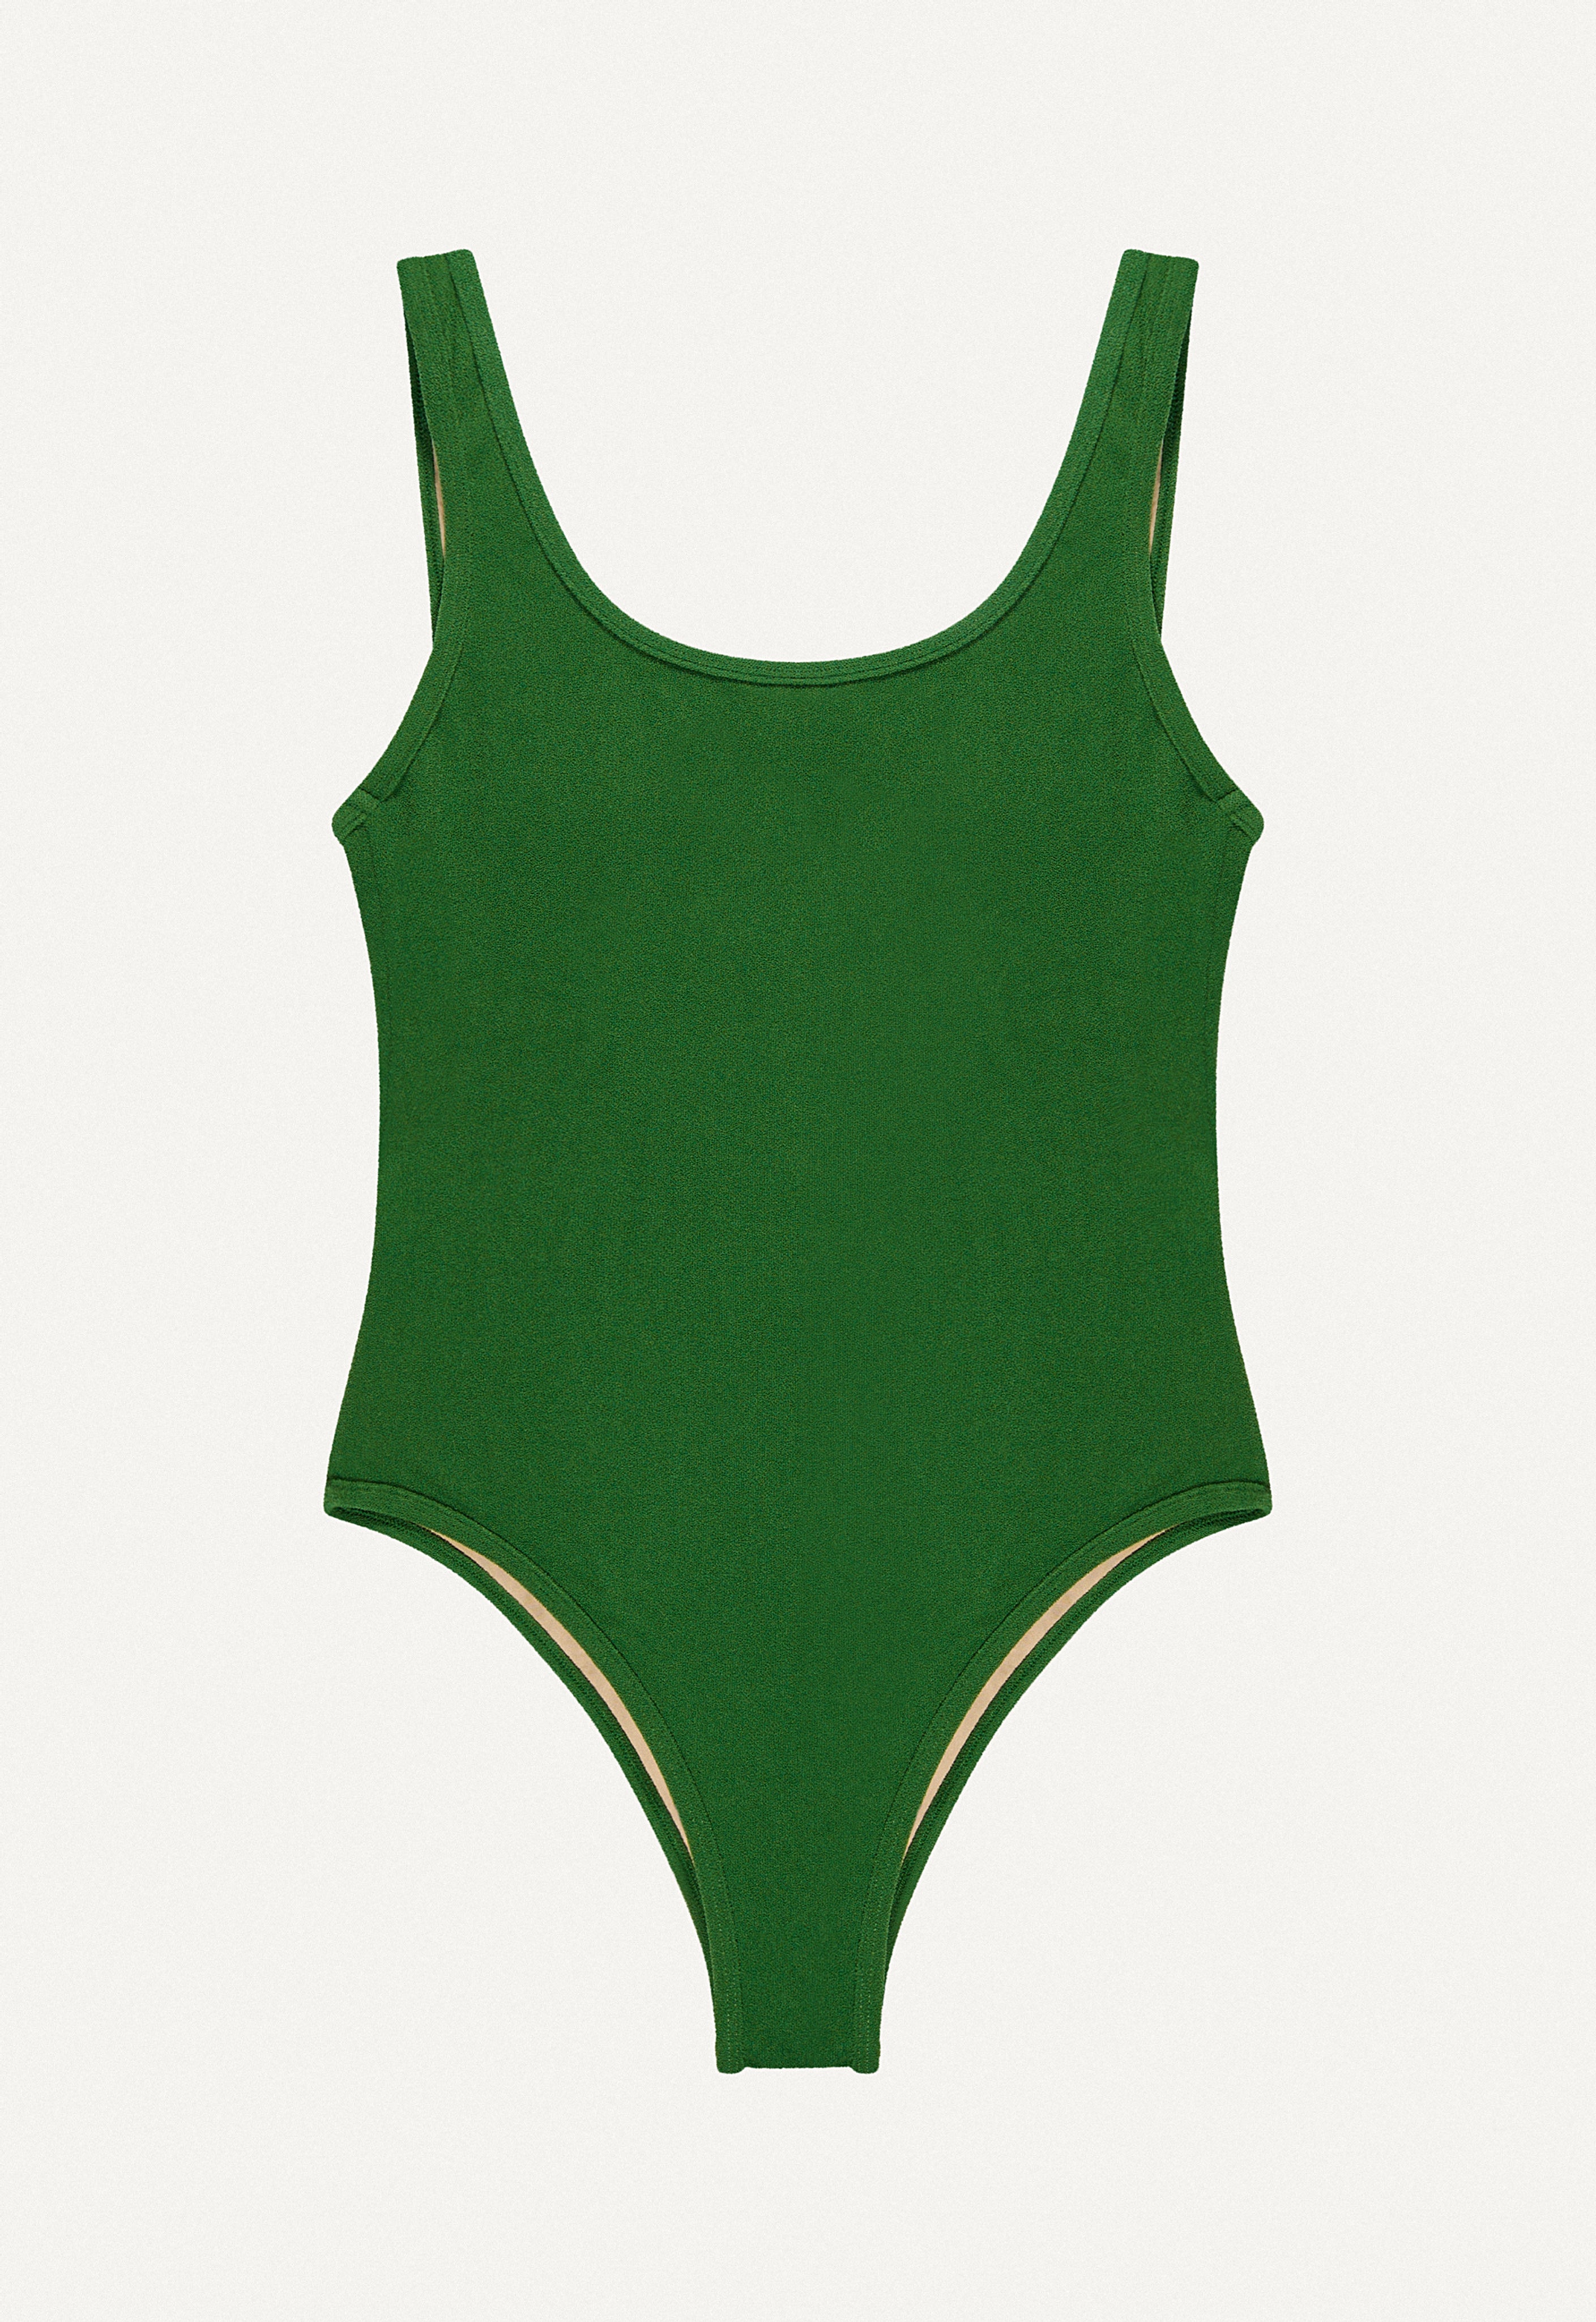 Swimsuit "Zephyr" in dark green terry